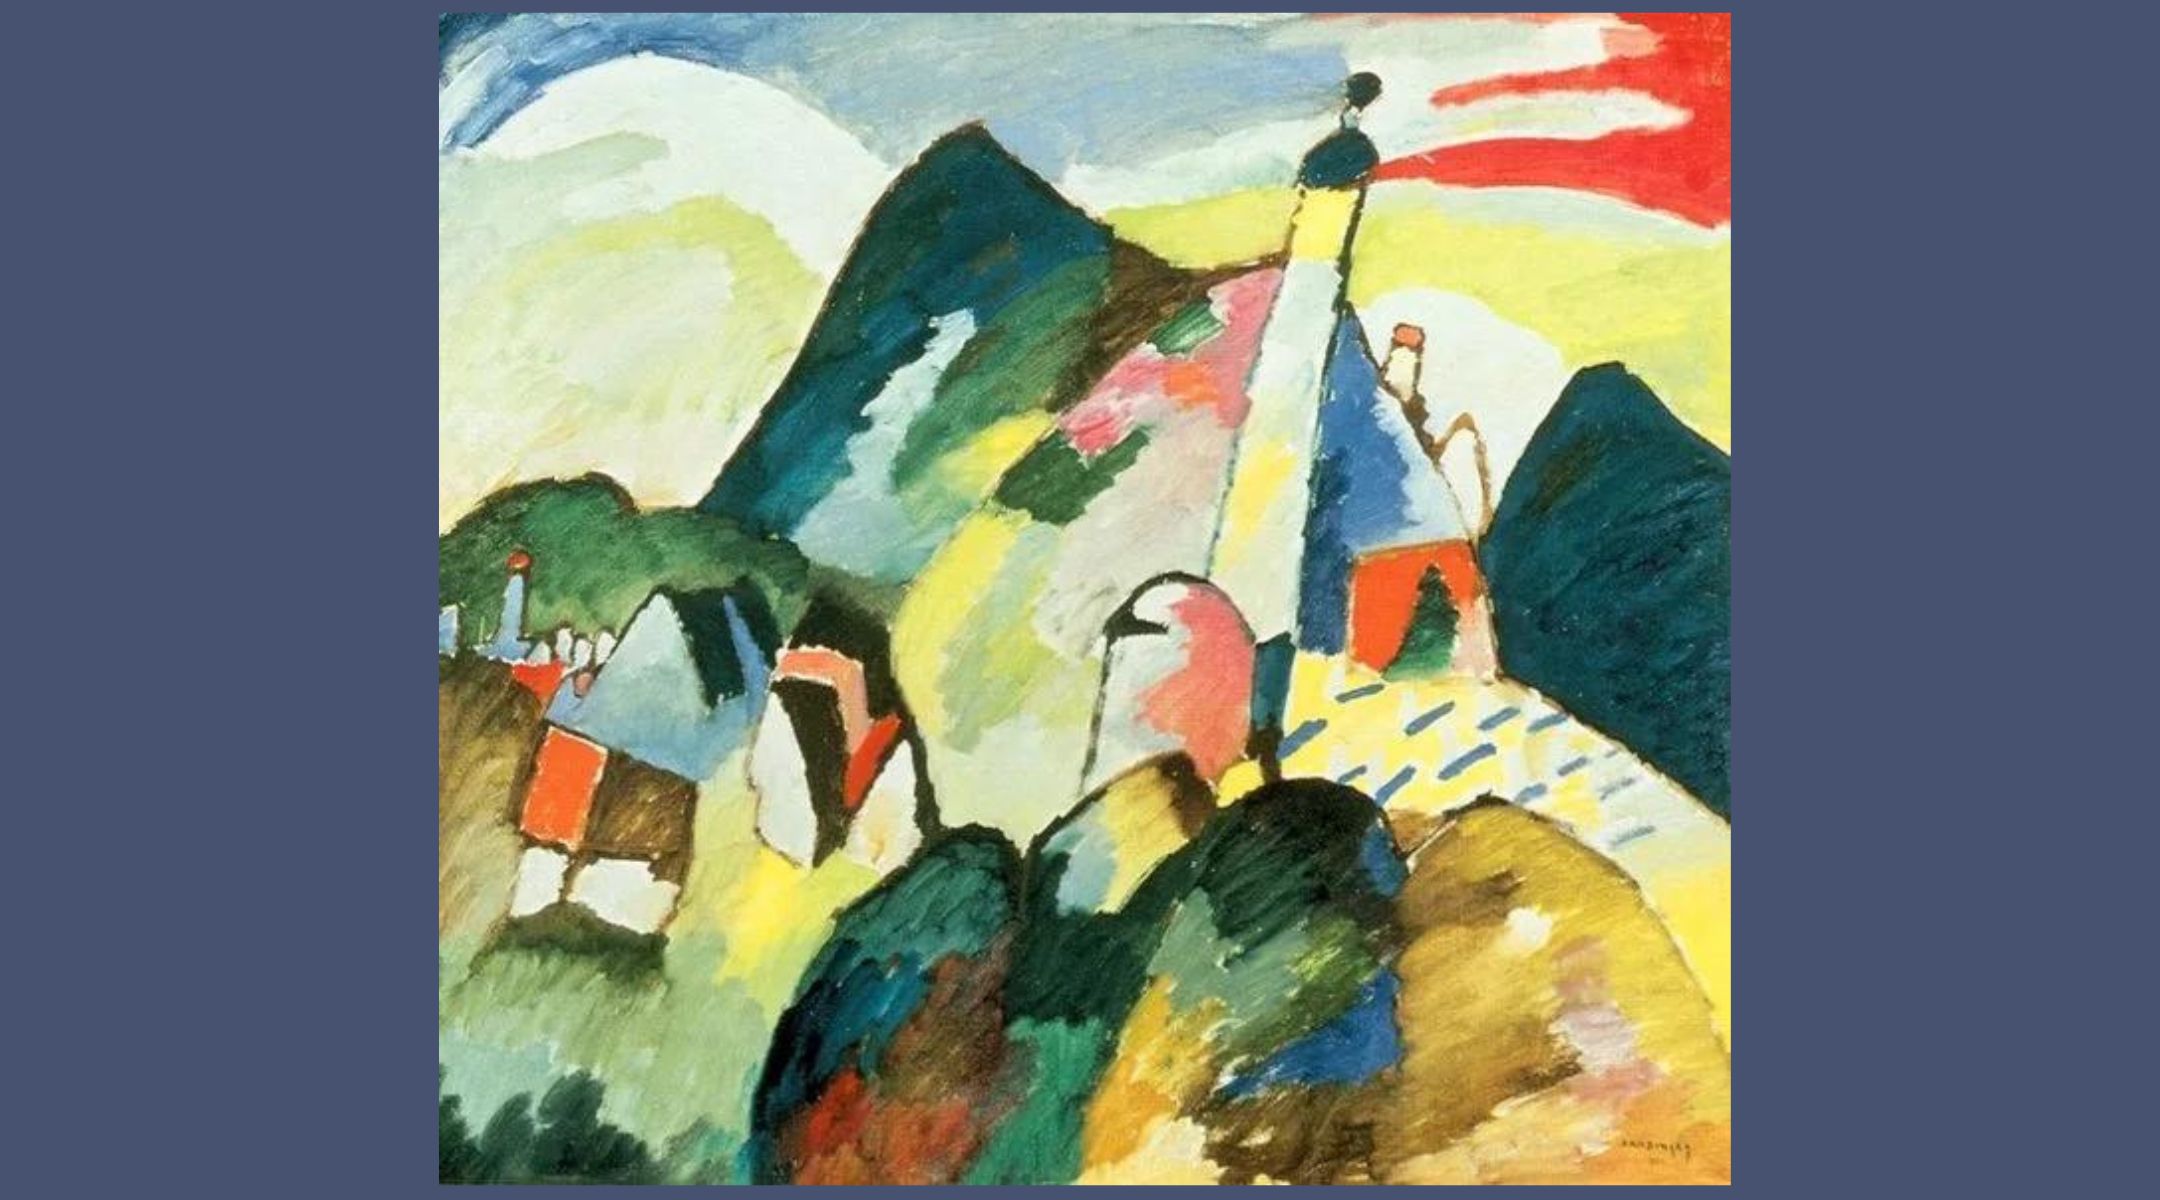 Het schilderij van Kandinsky keerde terug naar een joodse familie toen Nederland zijn benadering van roofkunst veranderde